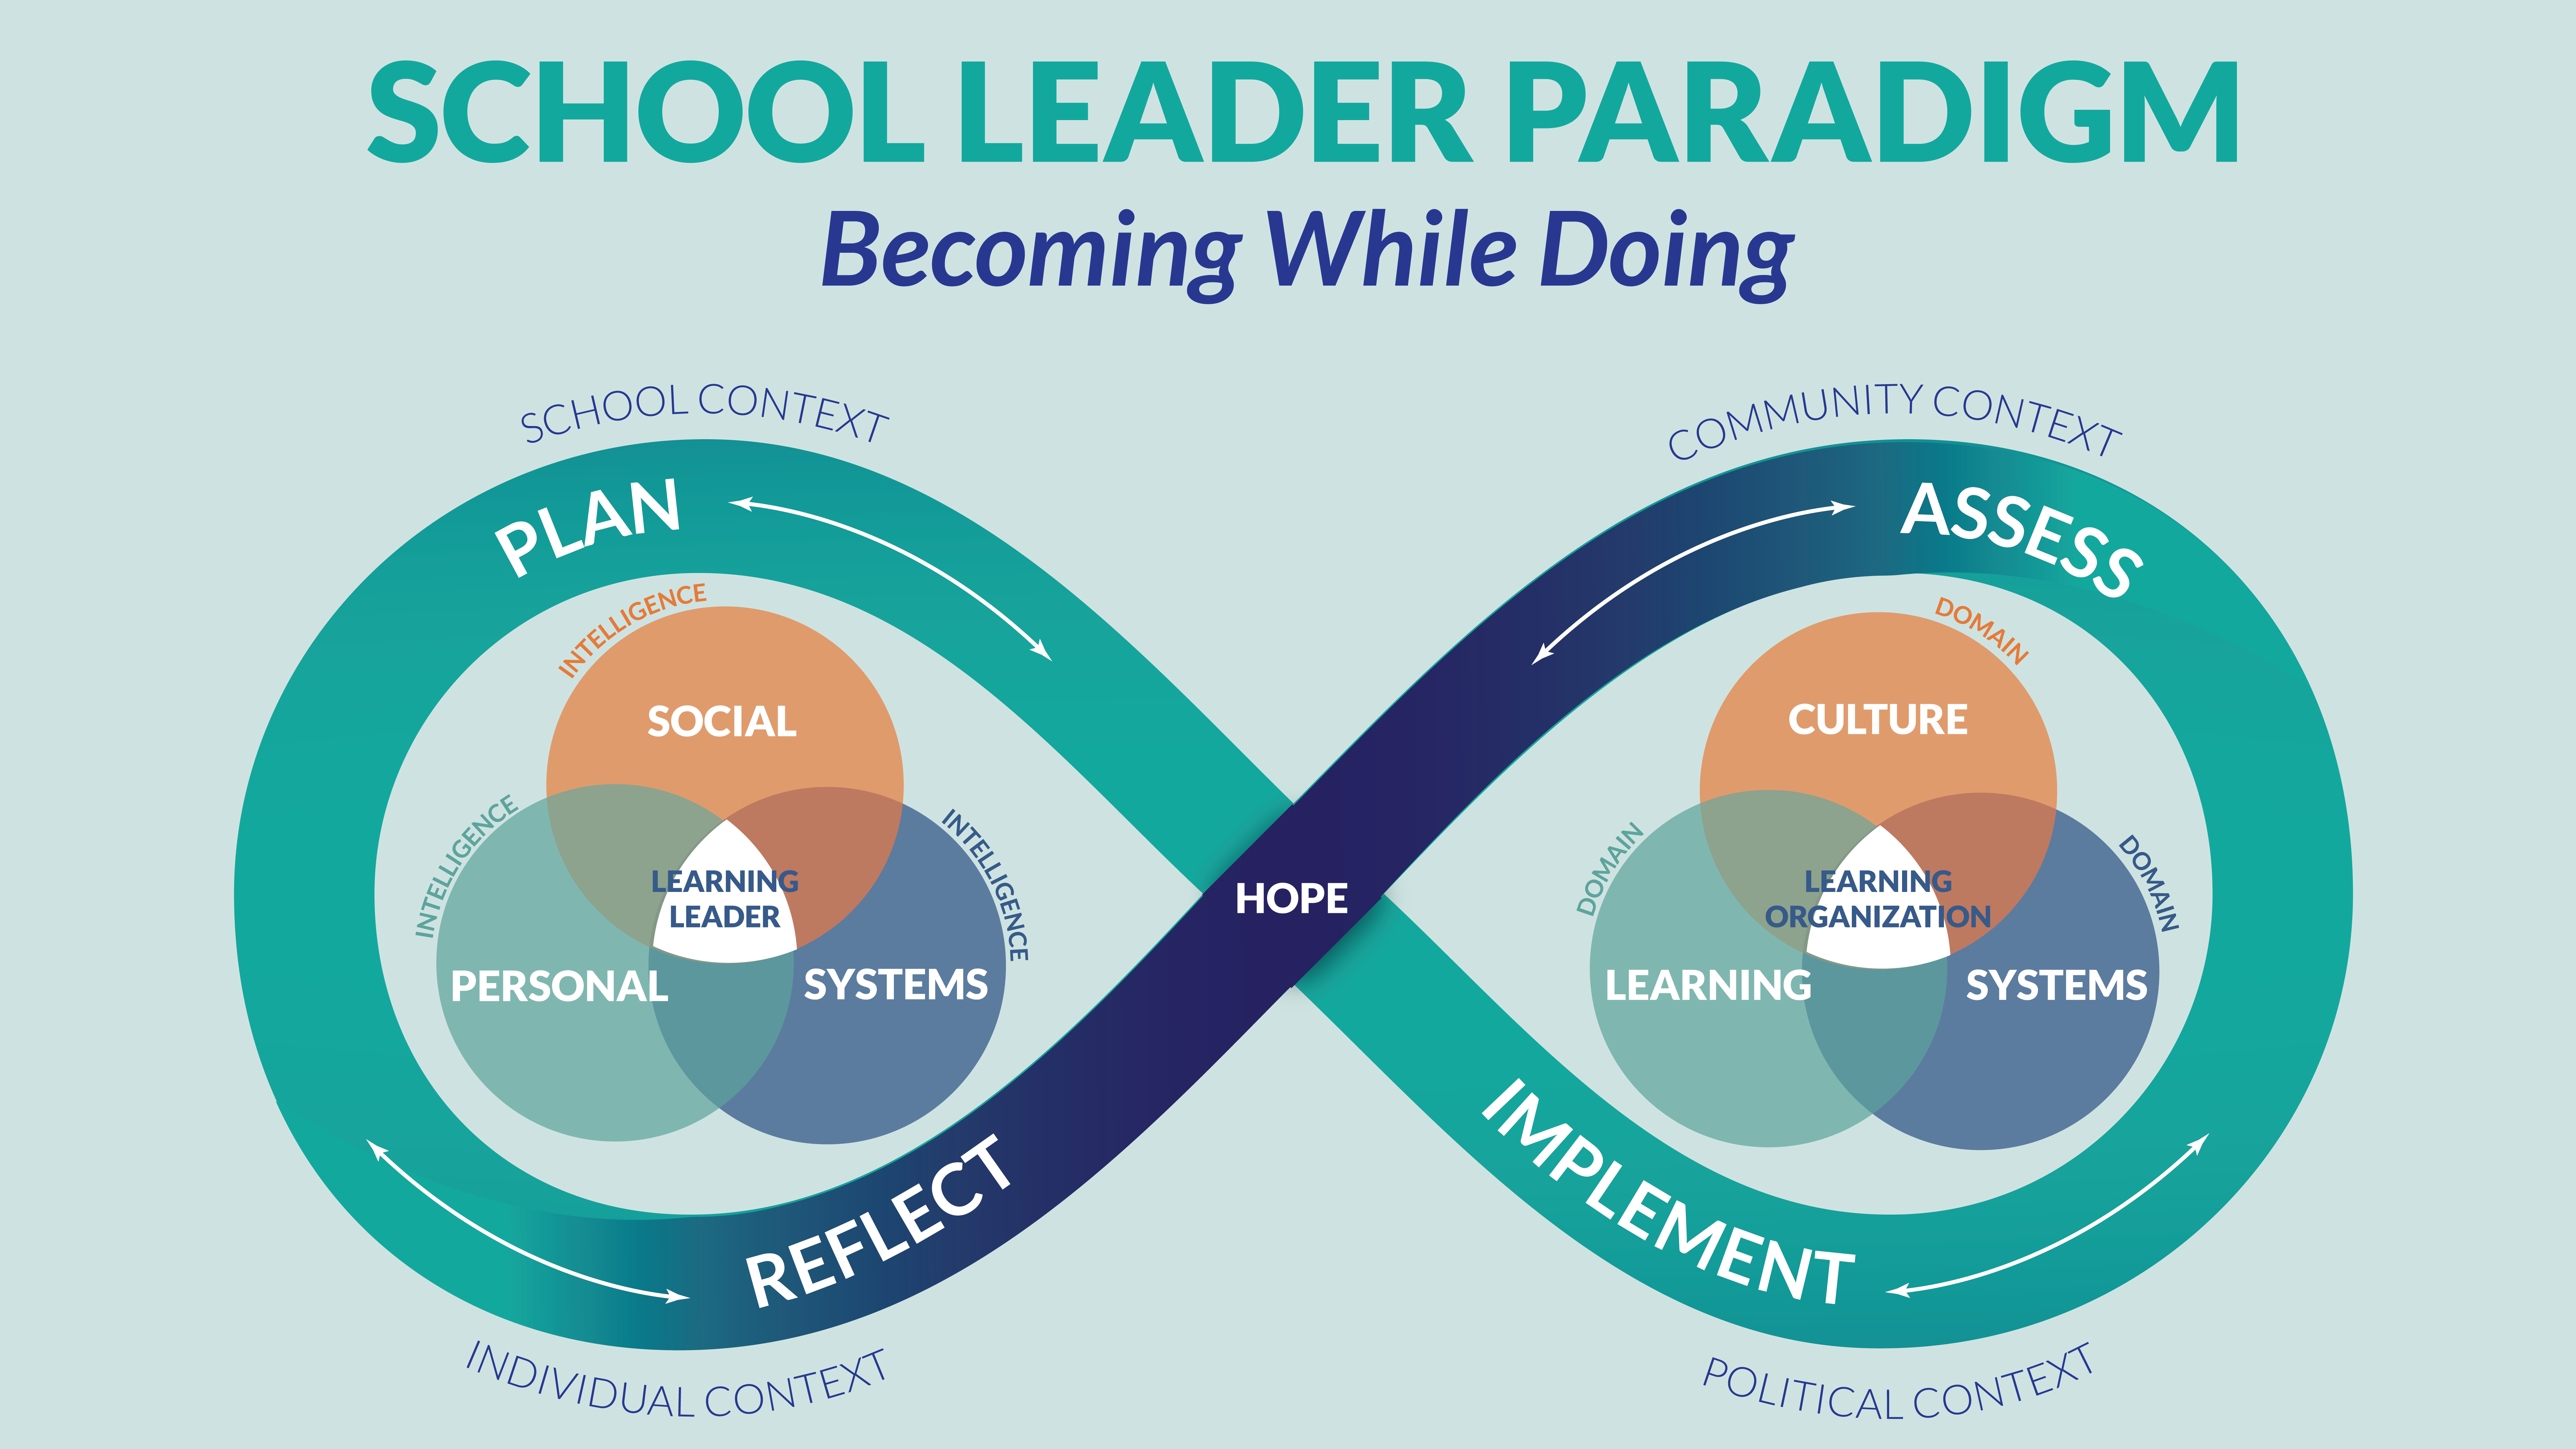 School_Leader_Paradigm_2.0_16.9